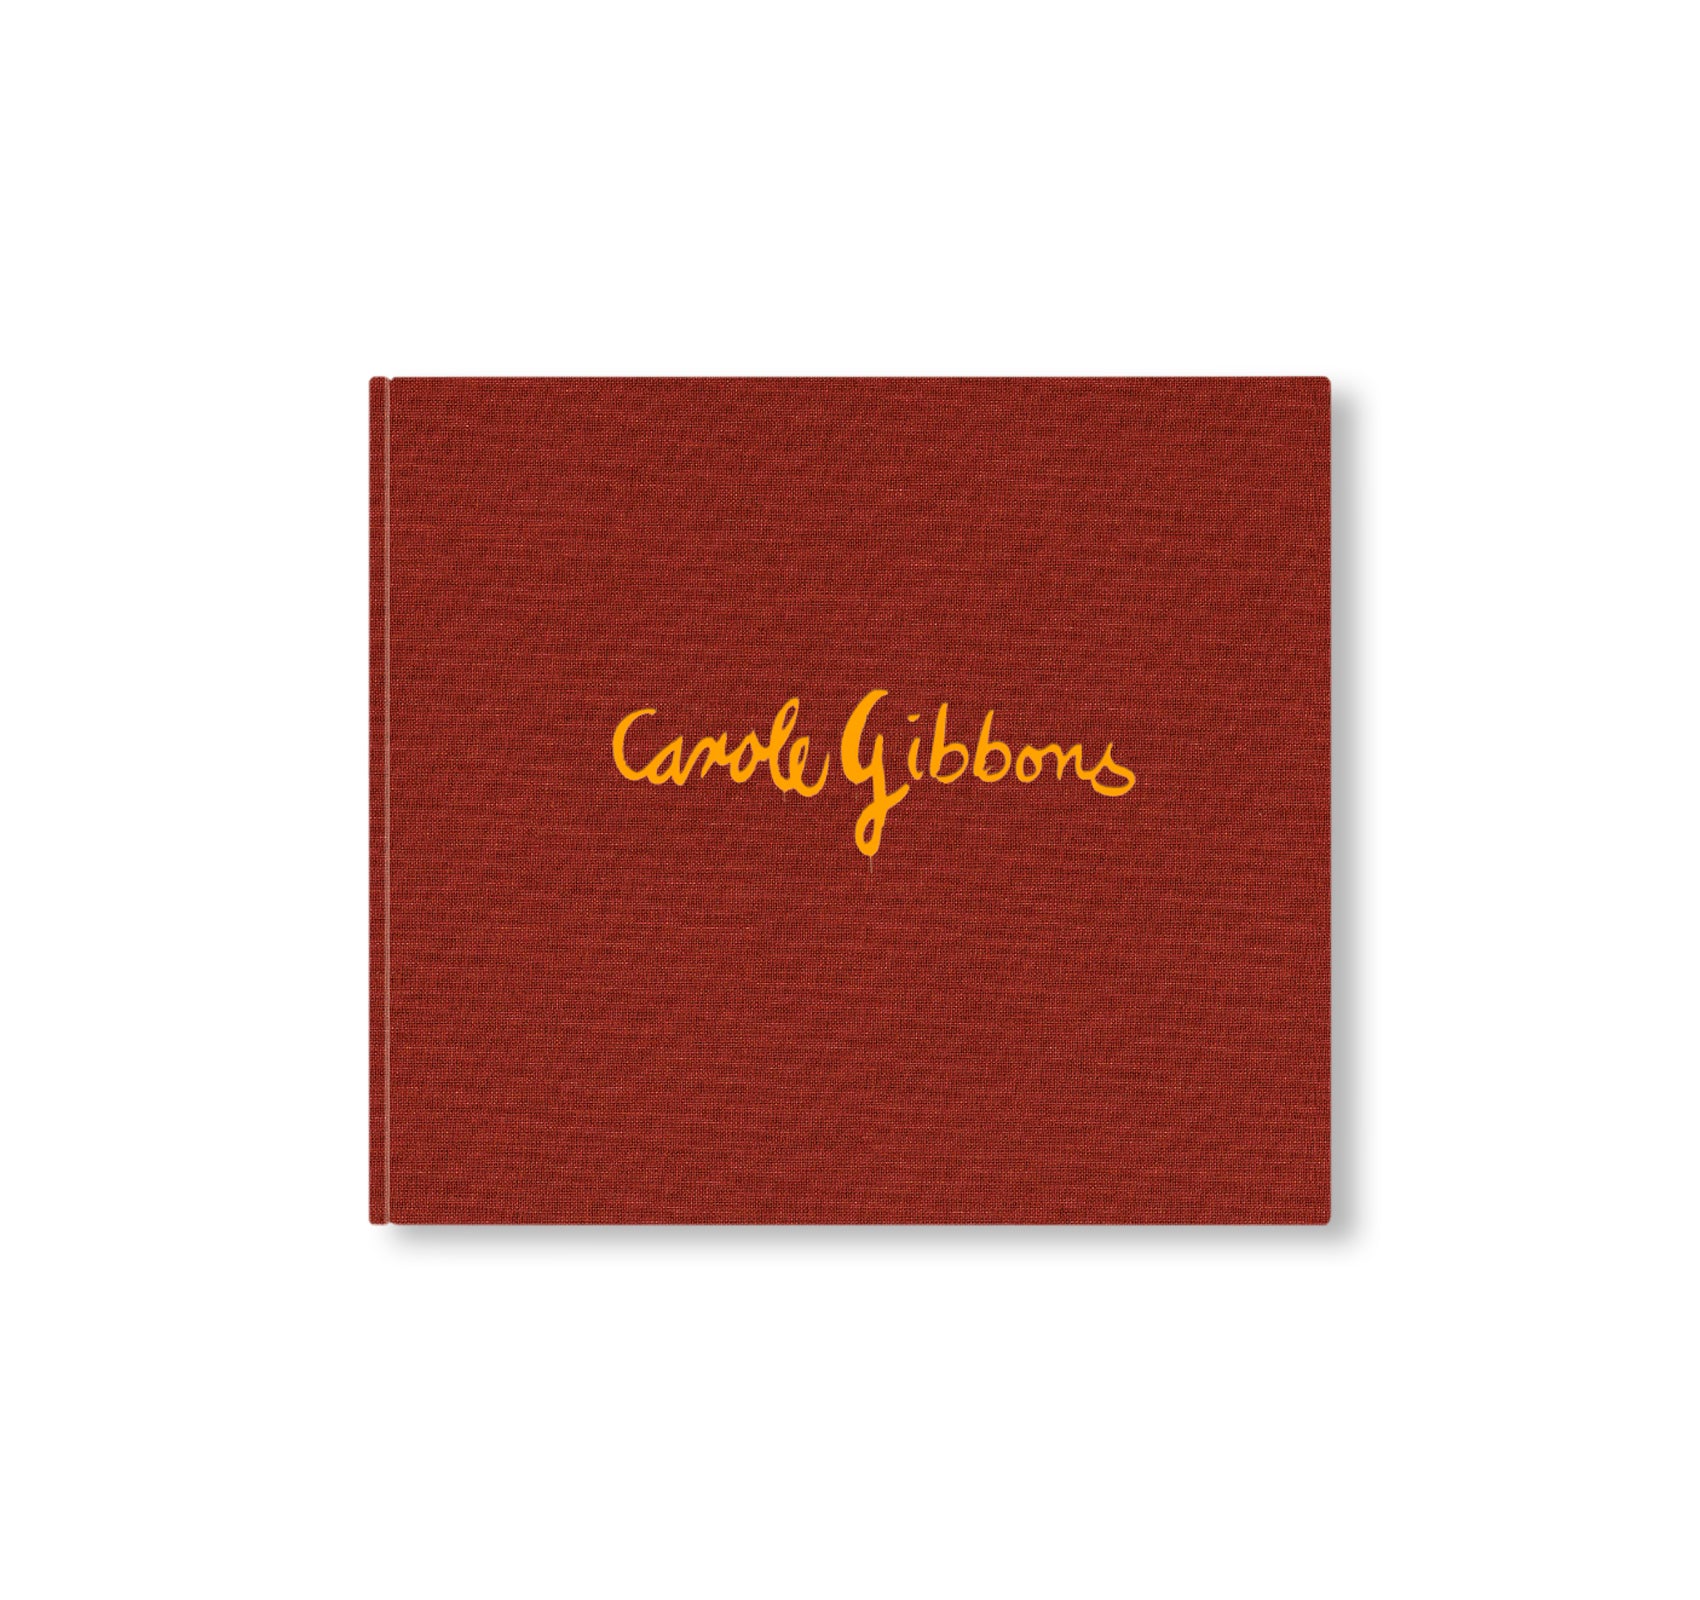 CAROLE GIBBONS by Carole Gibbons